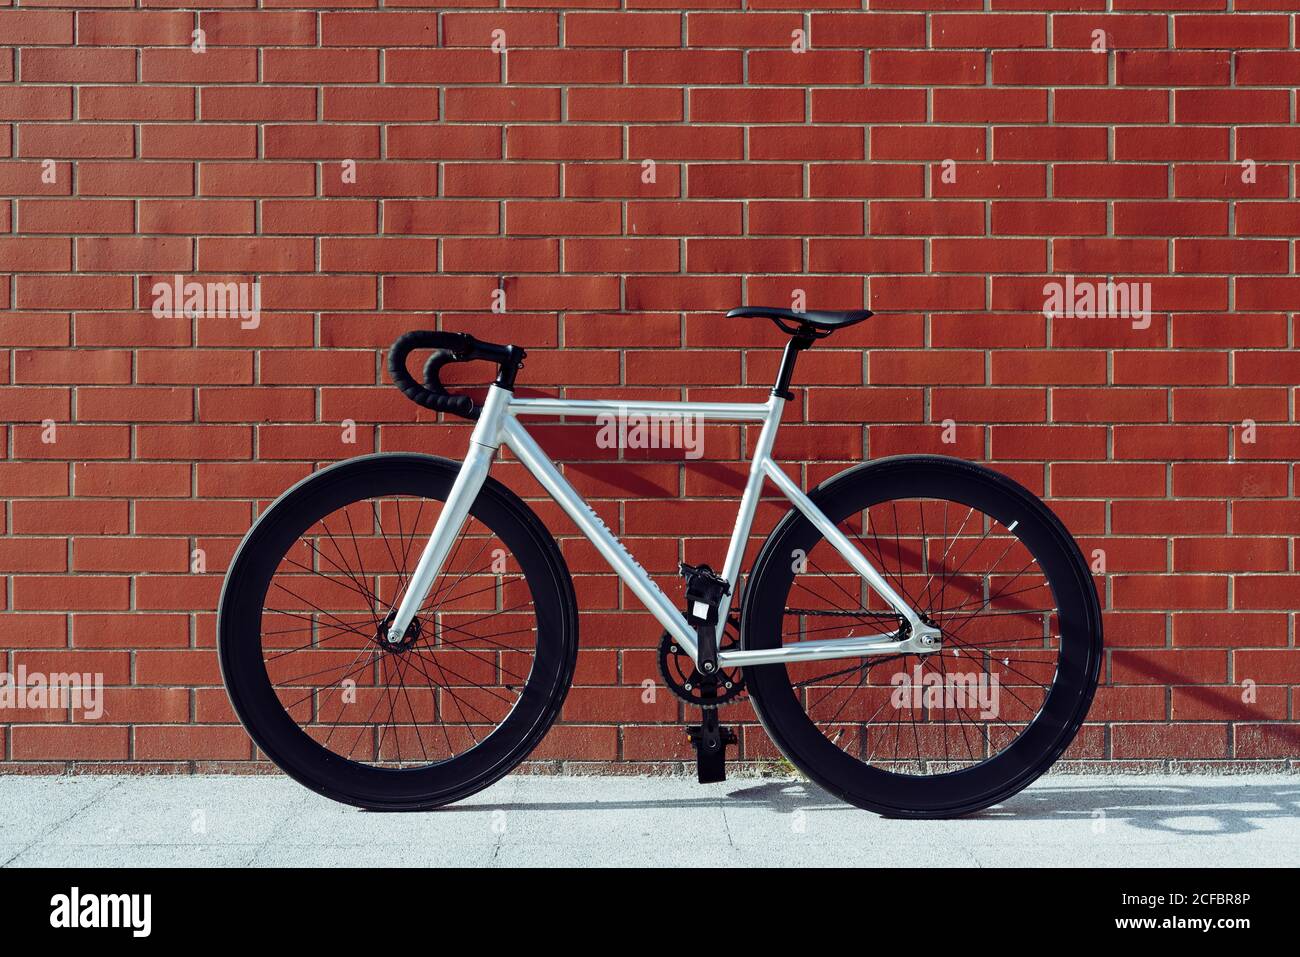 Neues modernes weißes Rennrad mit schwarzer Griffstange geparkt Gegen rote  Backsteinmauer Stockfotografie - Alamy